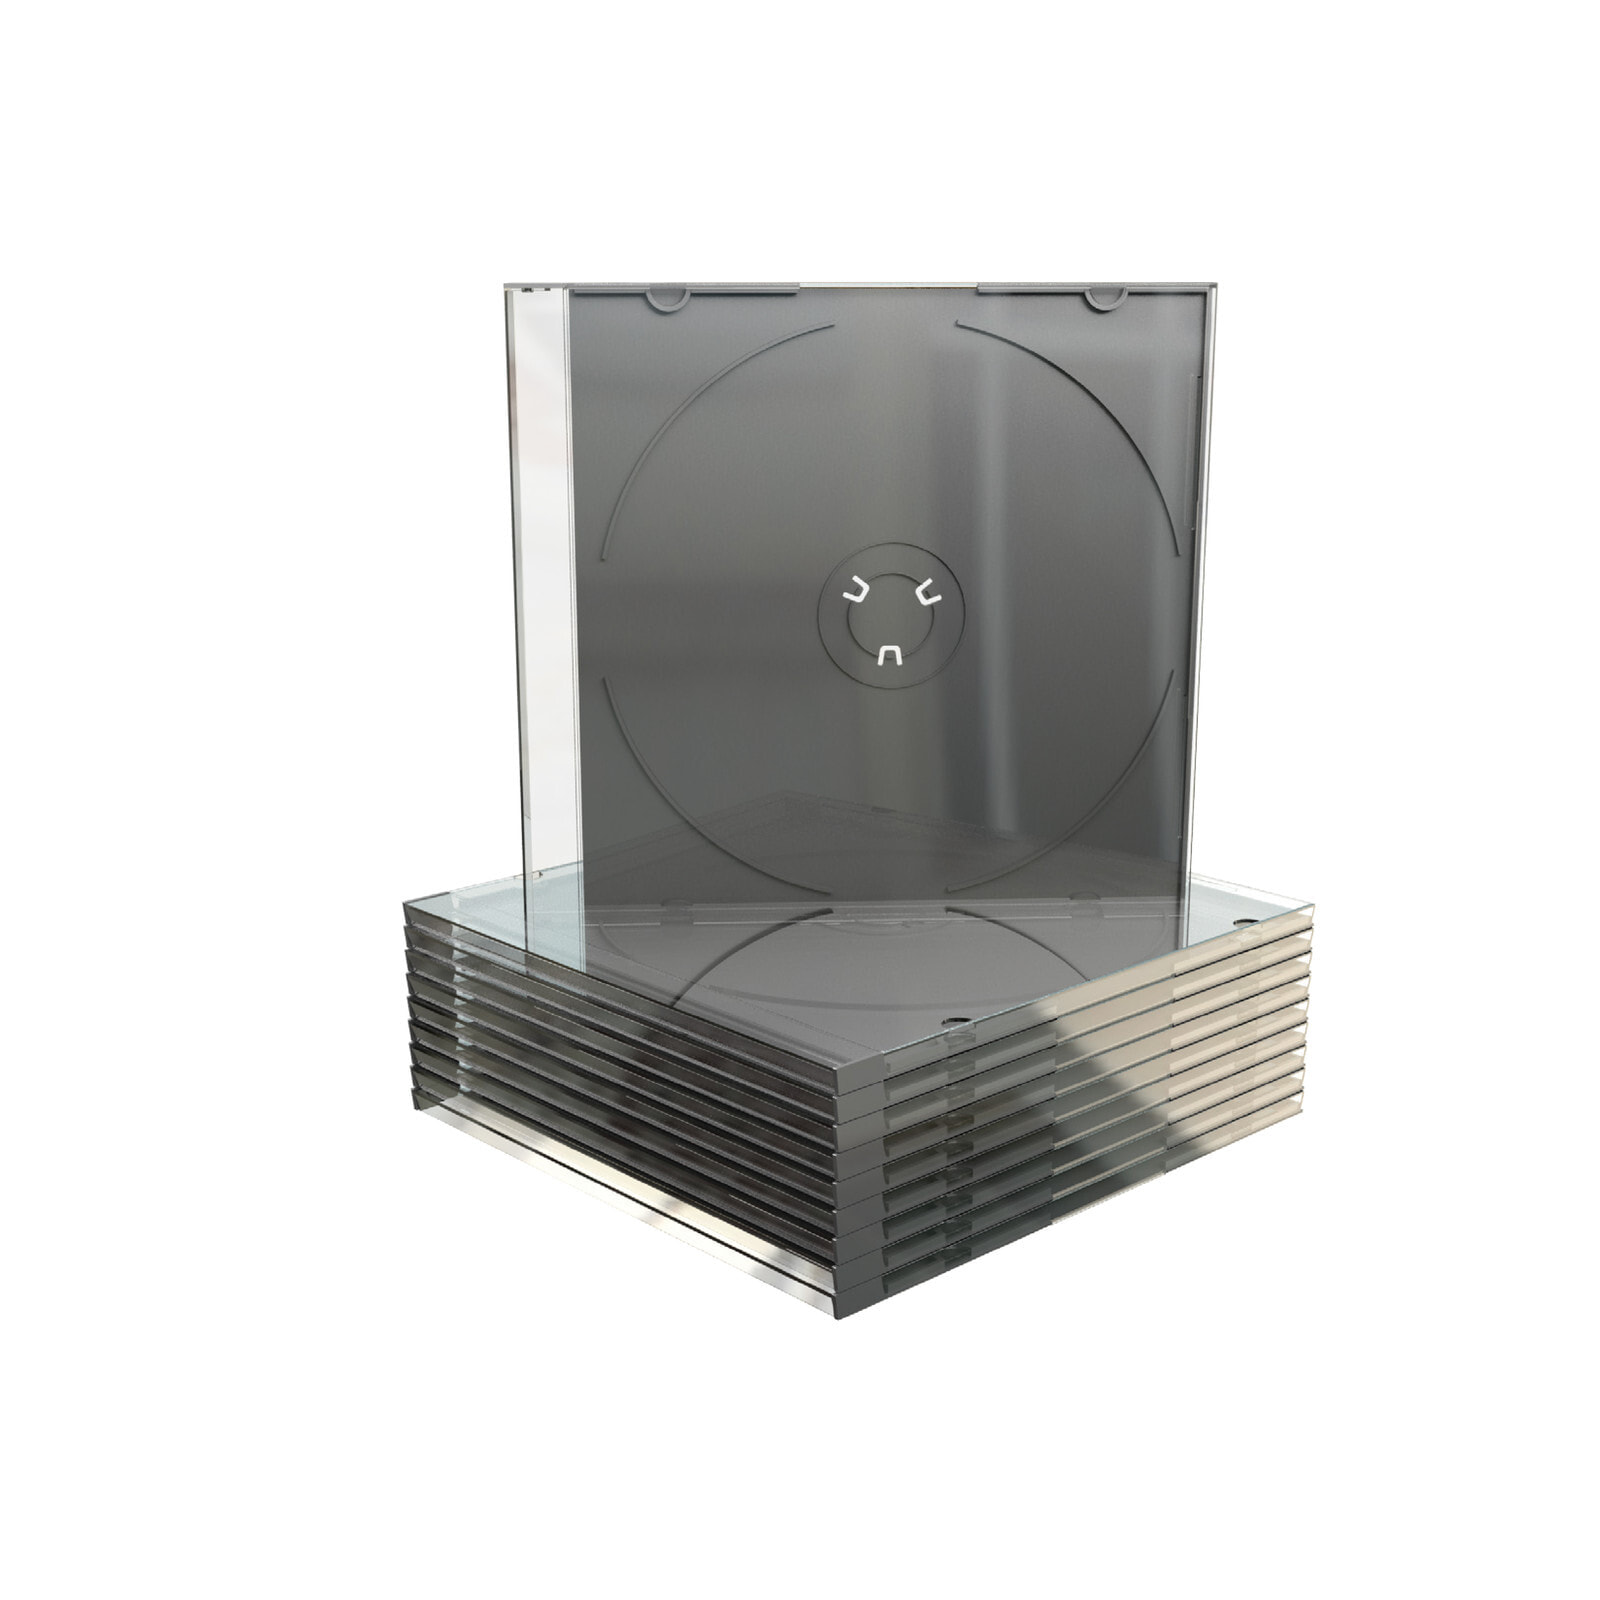 MediaRange BOX21-M чехлы для оптических дисков Стандартная упаковка 1 диск (ов) Черный, Прозрачный